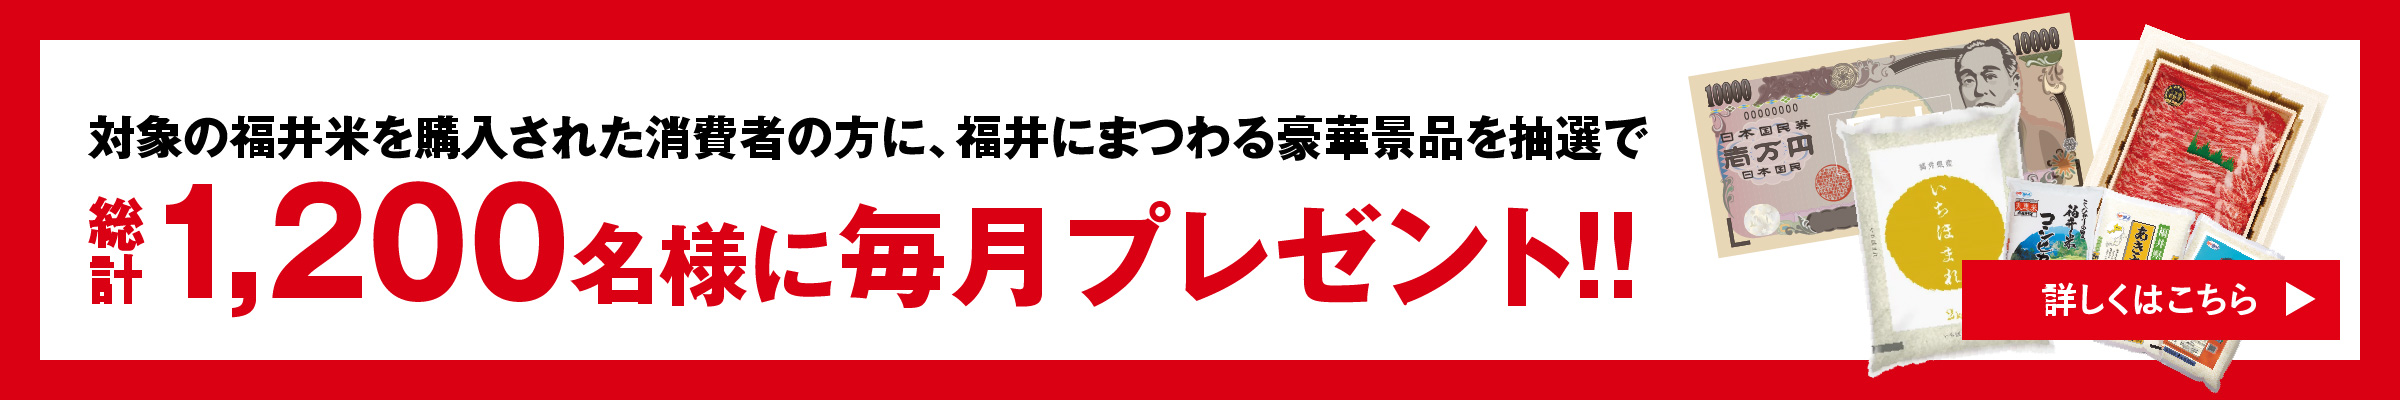 福井の新米暮らしの応援キャンペーン